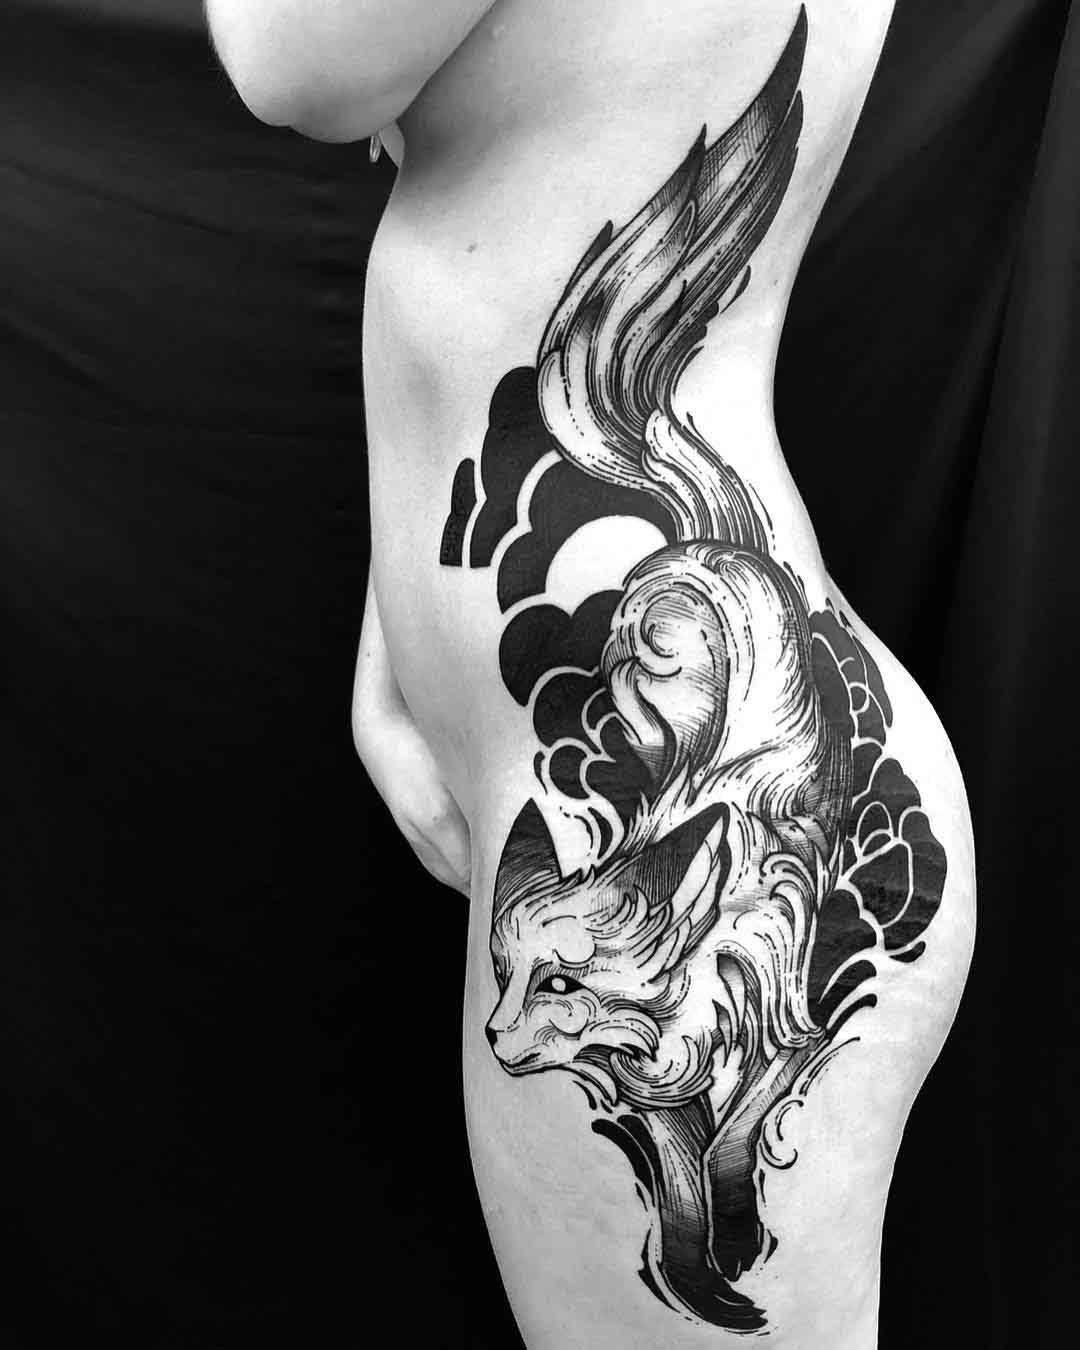 Starry Fox Tattoo - Best Tattoo Ideas Gallery